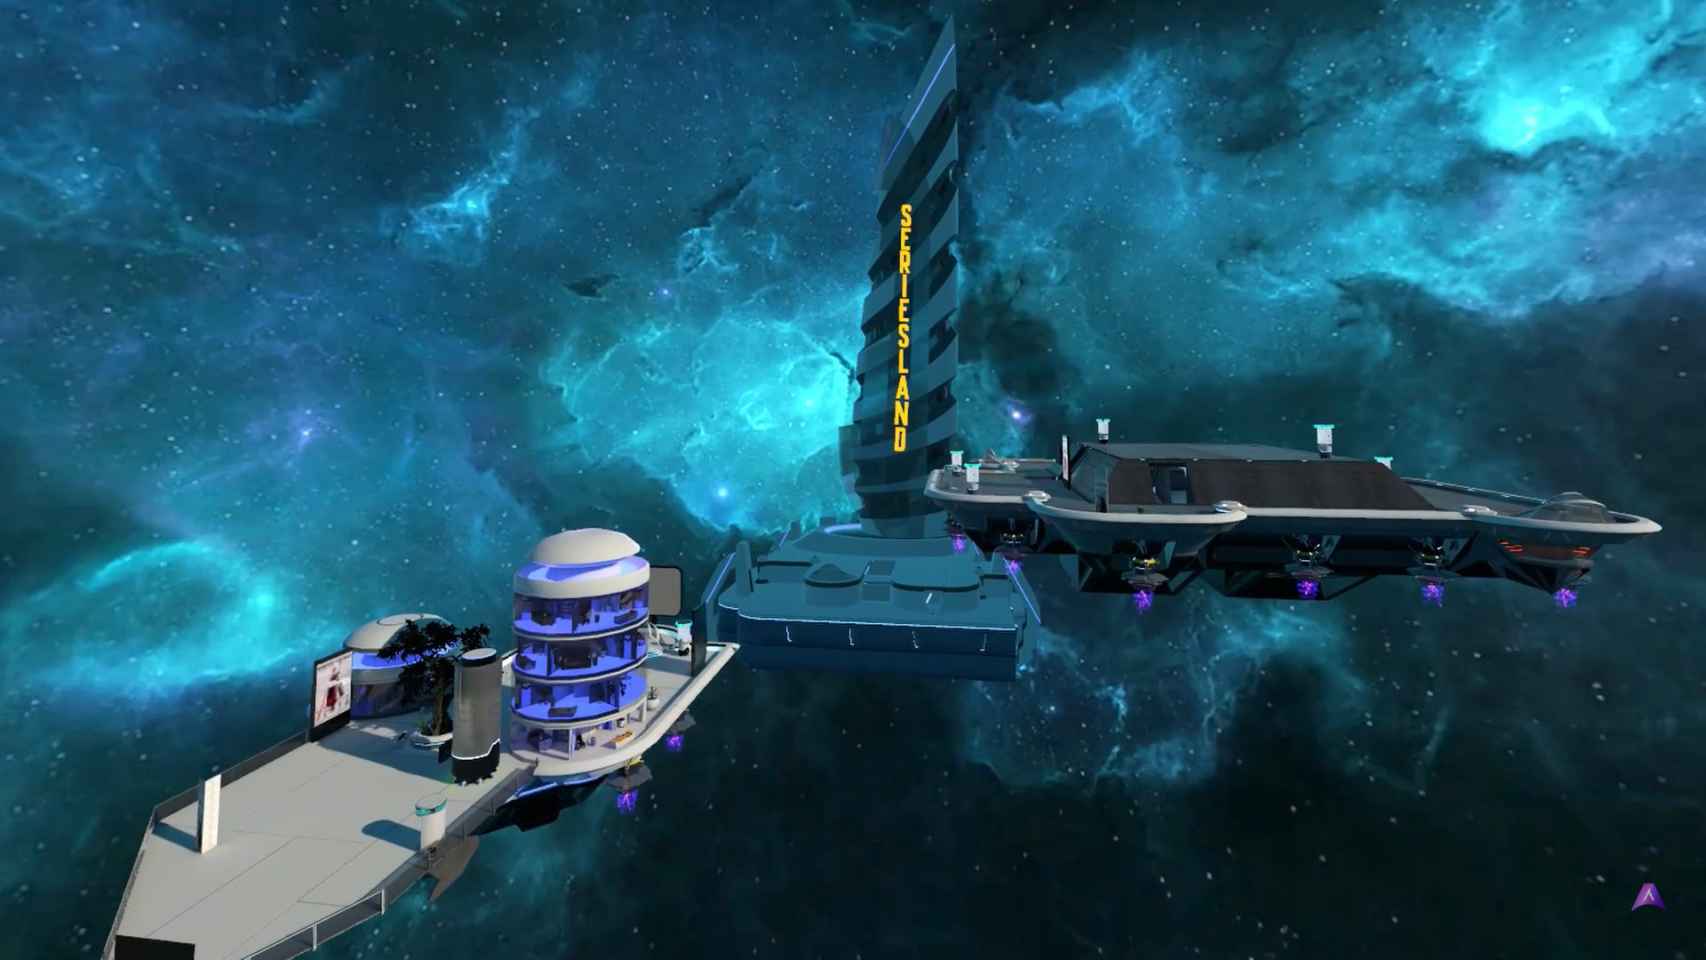 Espacio de Seriesland donde Aglaya creó un metaverso con dos naves donde poder ver bajo demanda más de 12 horas de contenido.